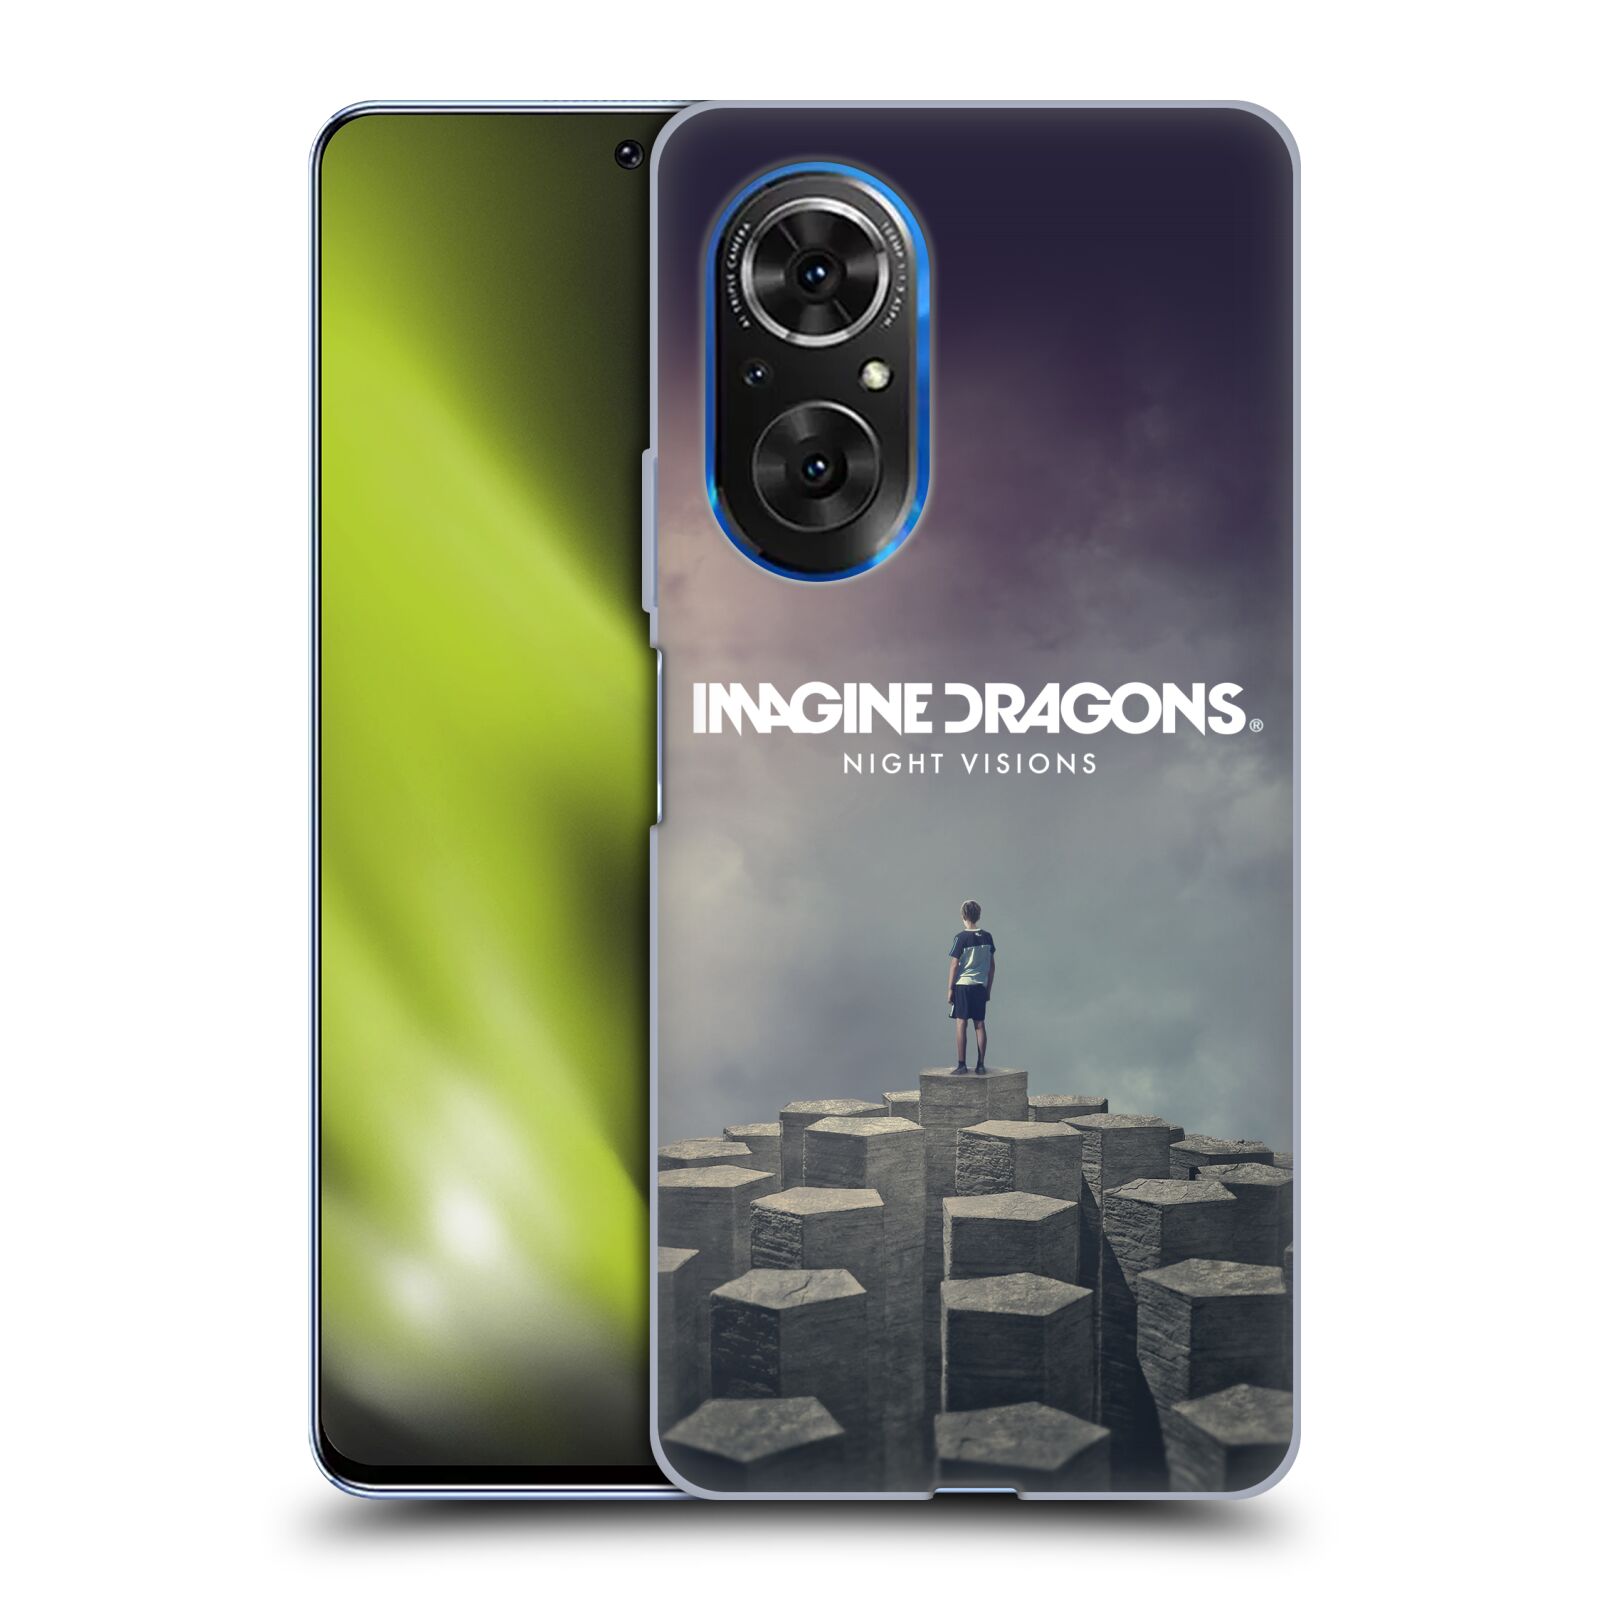 Silikonové pouzdro na mobil Huawei Nova 9 SE - Imagine Dragons - Night Visions